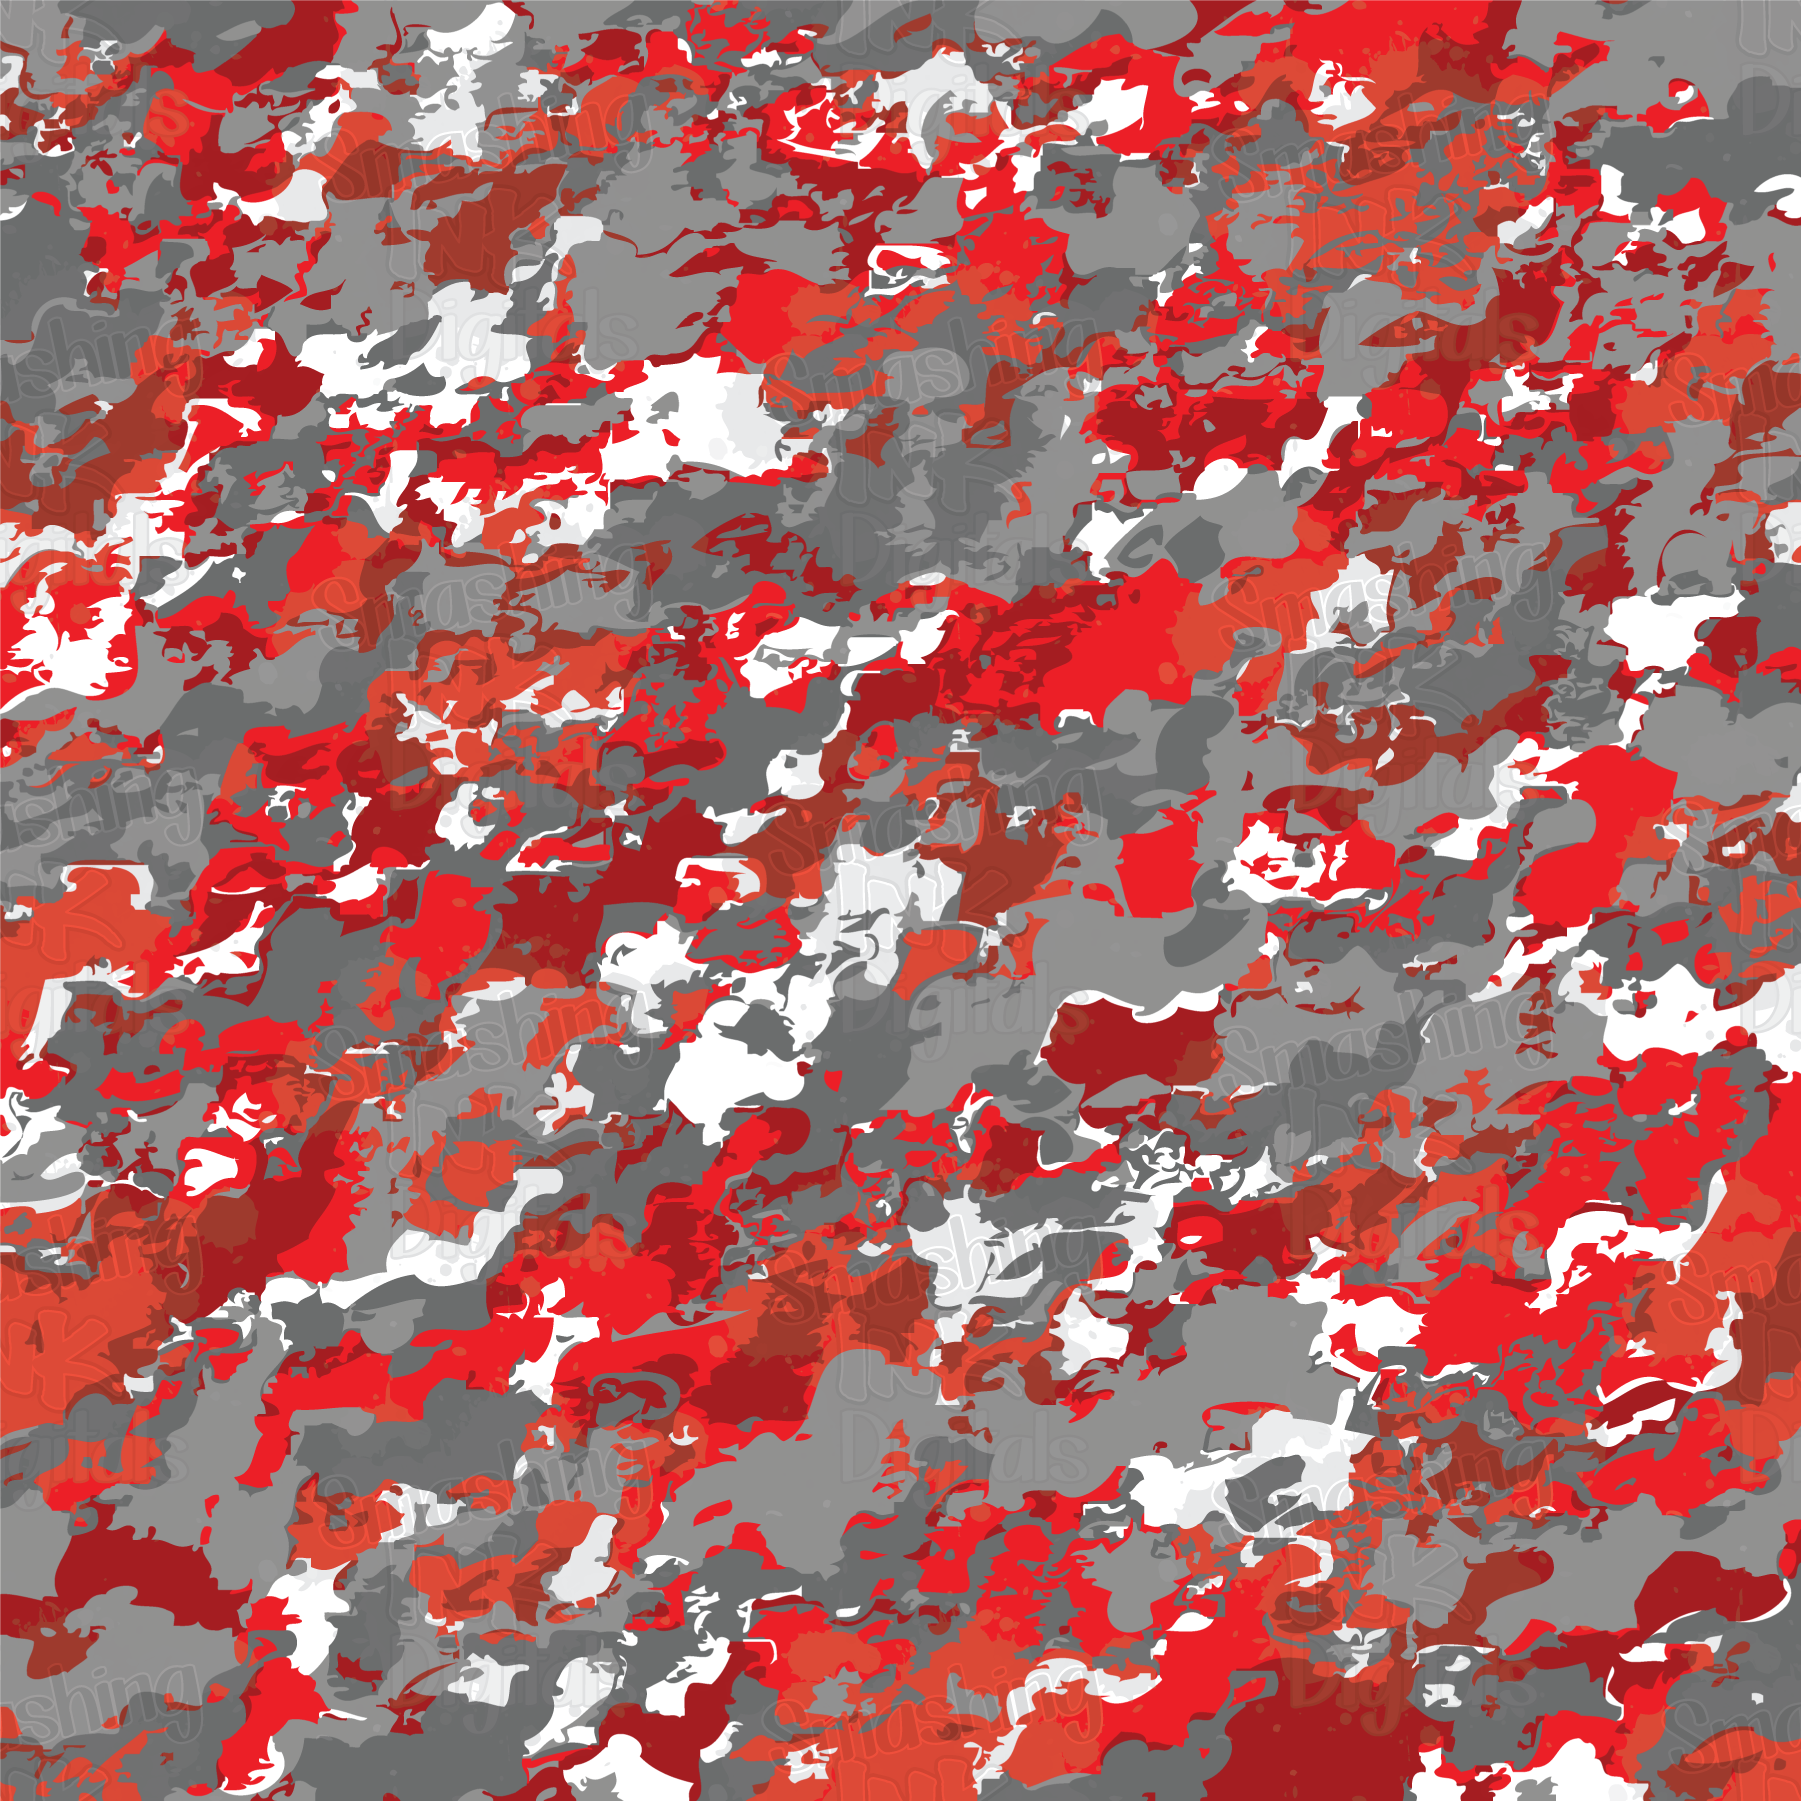 Large Digital Urban Red Camouflage - Metro Wrap